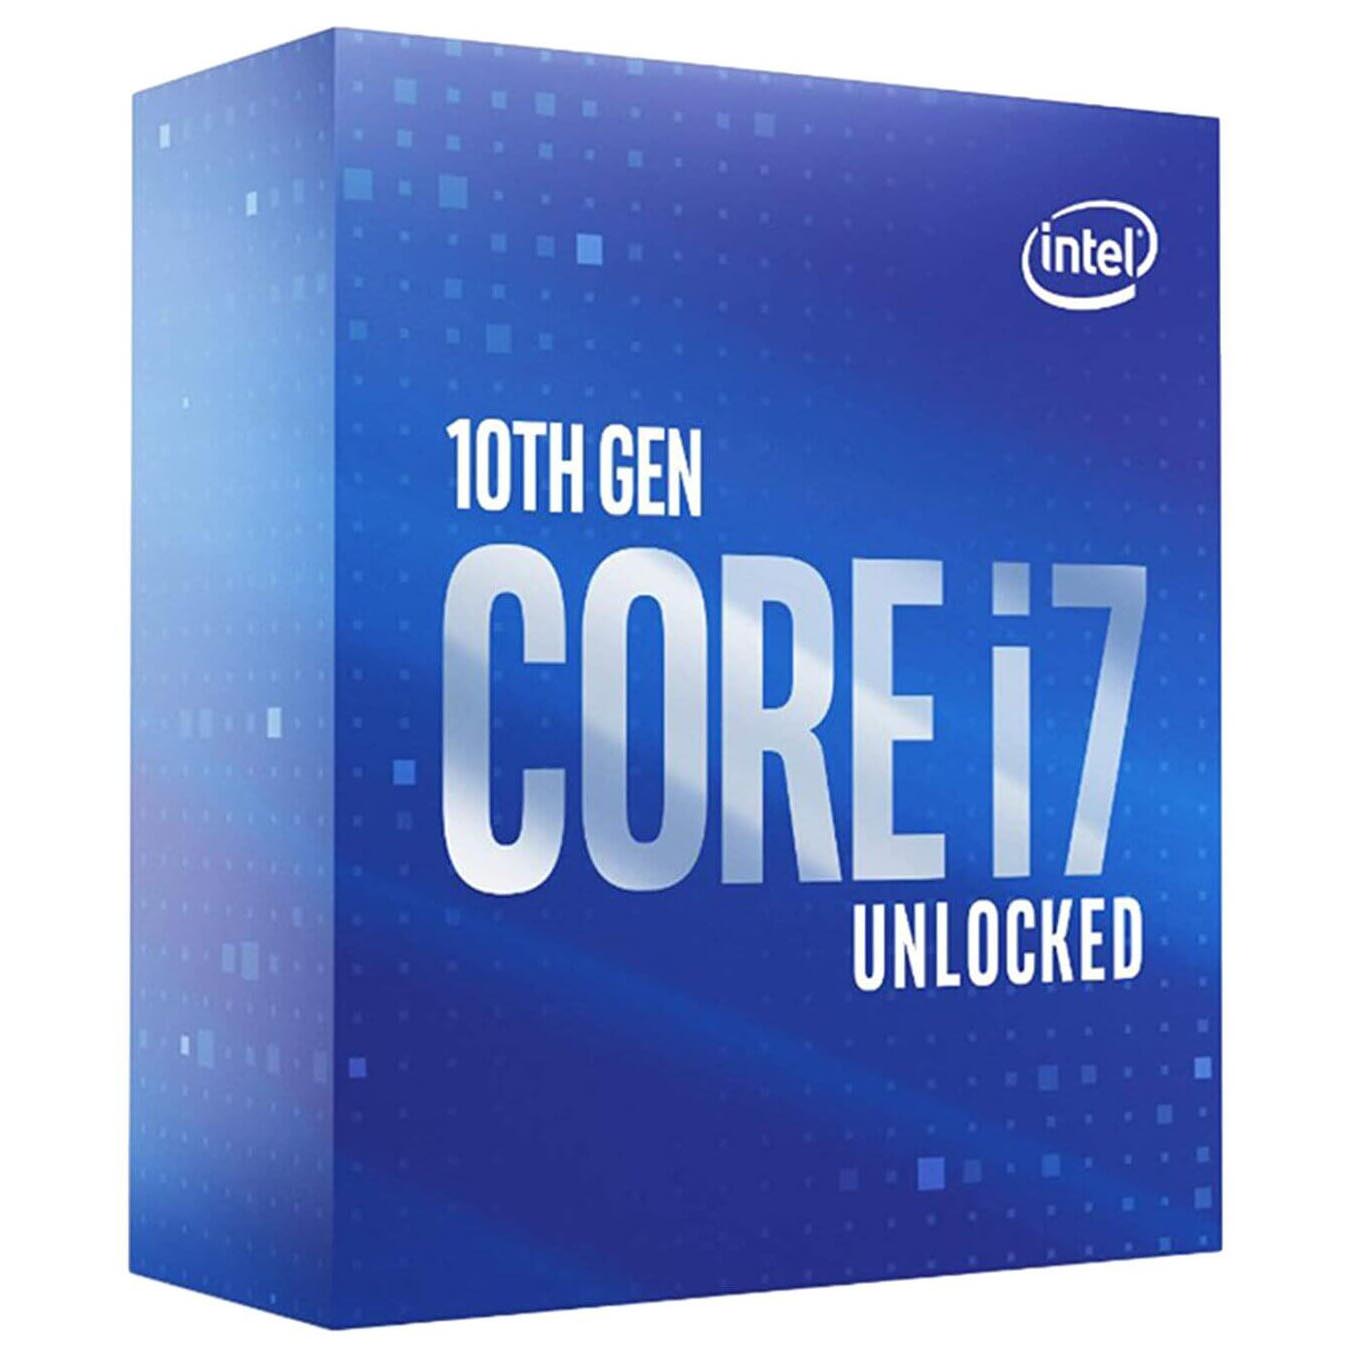 Процессор Intel Core i7-10700K BOX (без кулера), LGA 1200